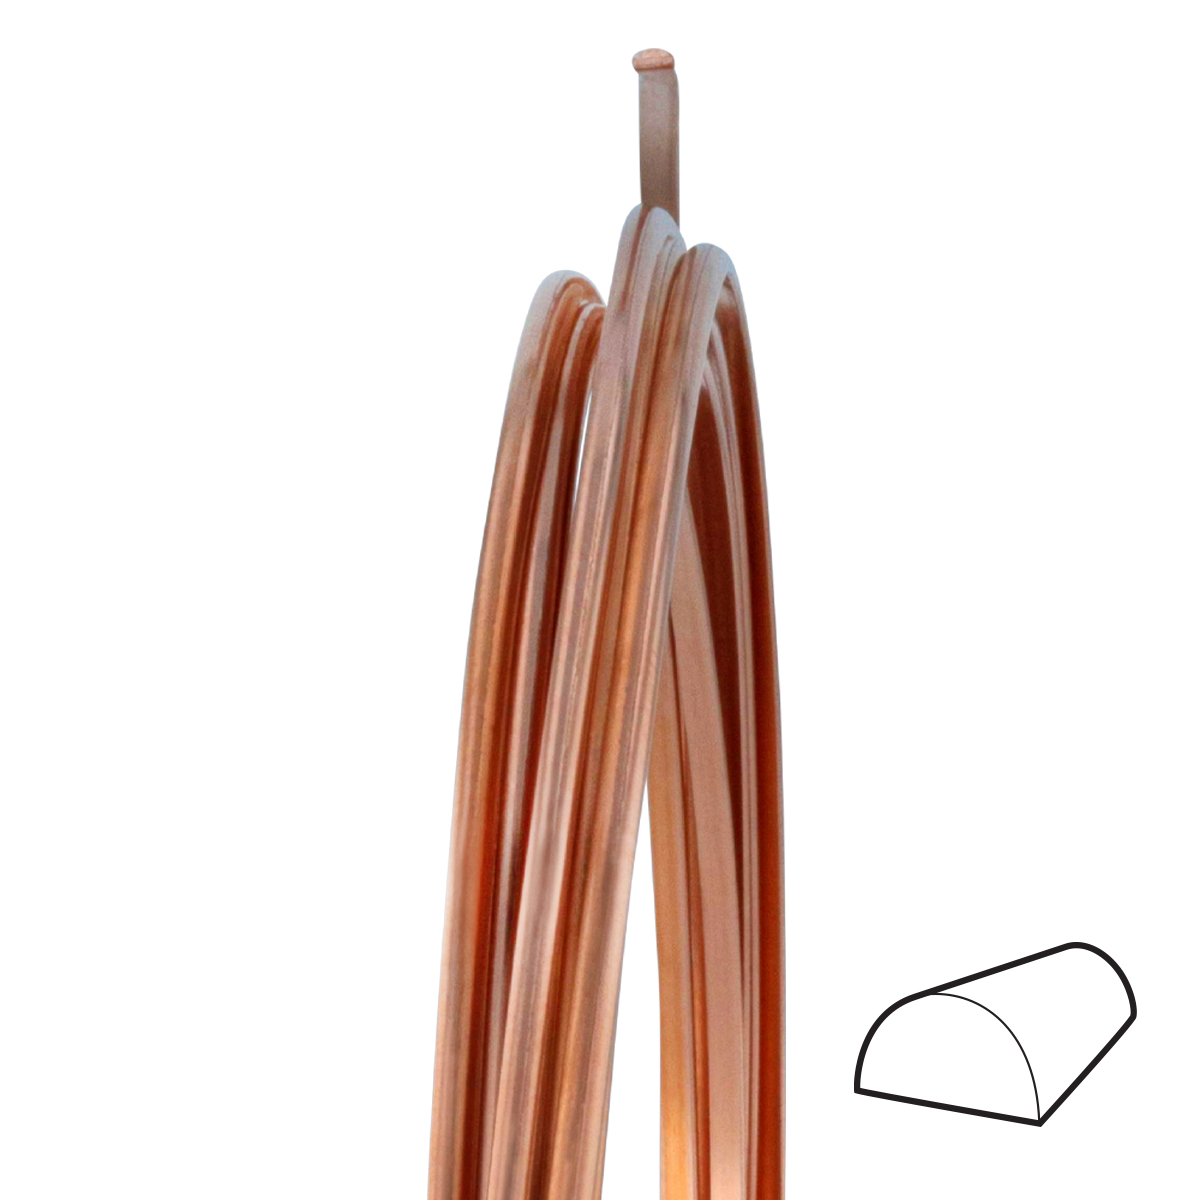 25' Half Round Half Hard Copper Wire - 18 Gauge, WIR-654.18